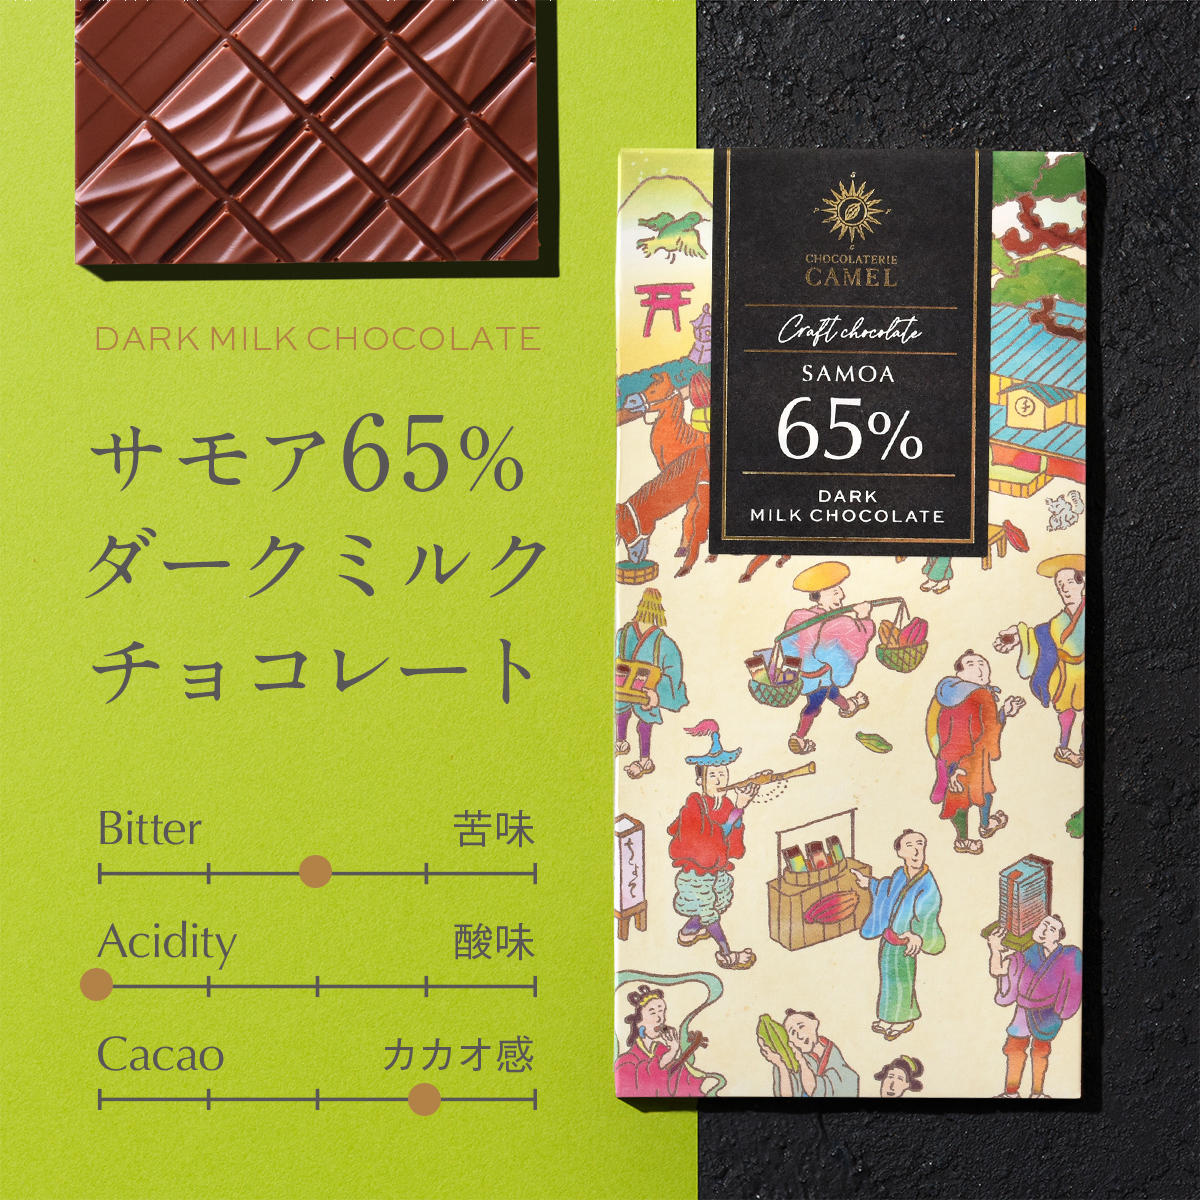 ショコラトリーキャメル サモア65%ダークミルクチョコレート